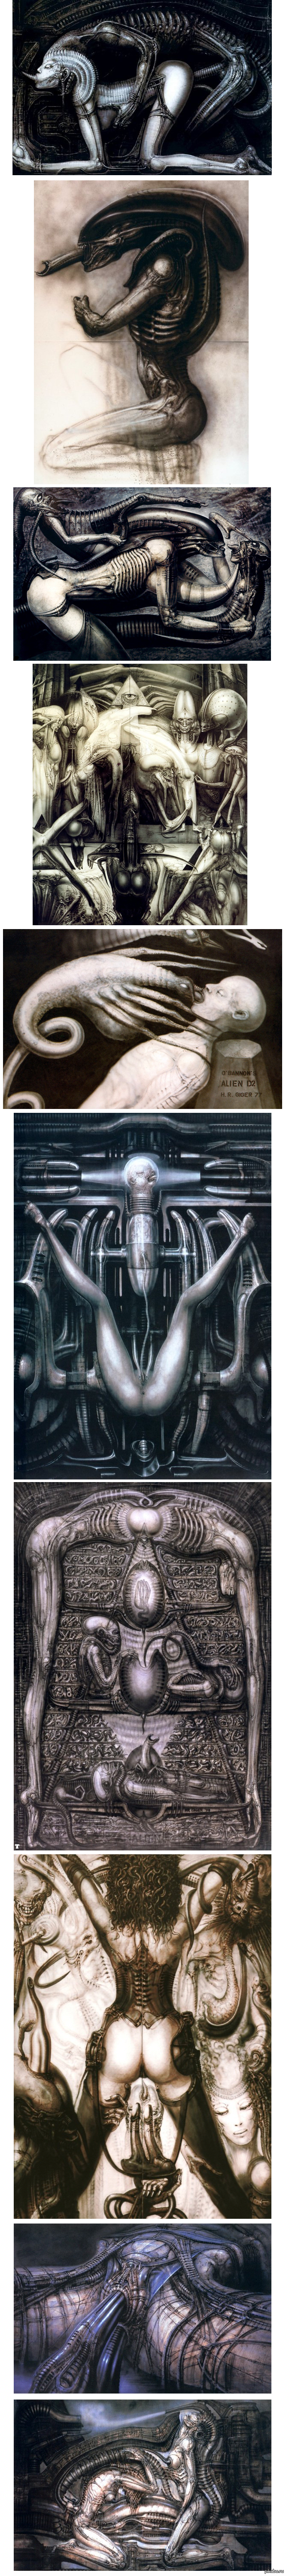 Giger. dark art - NSFW, Hans Giger, Alien movie, Fantasy, Artist, Cyberpunk